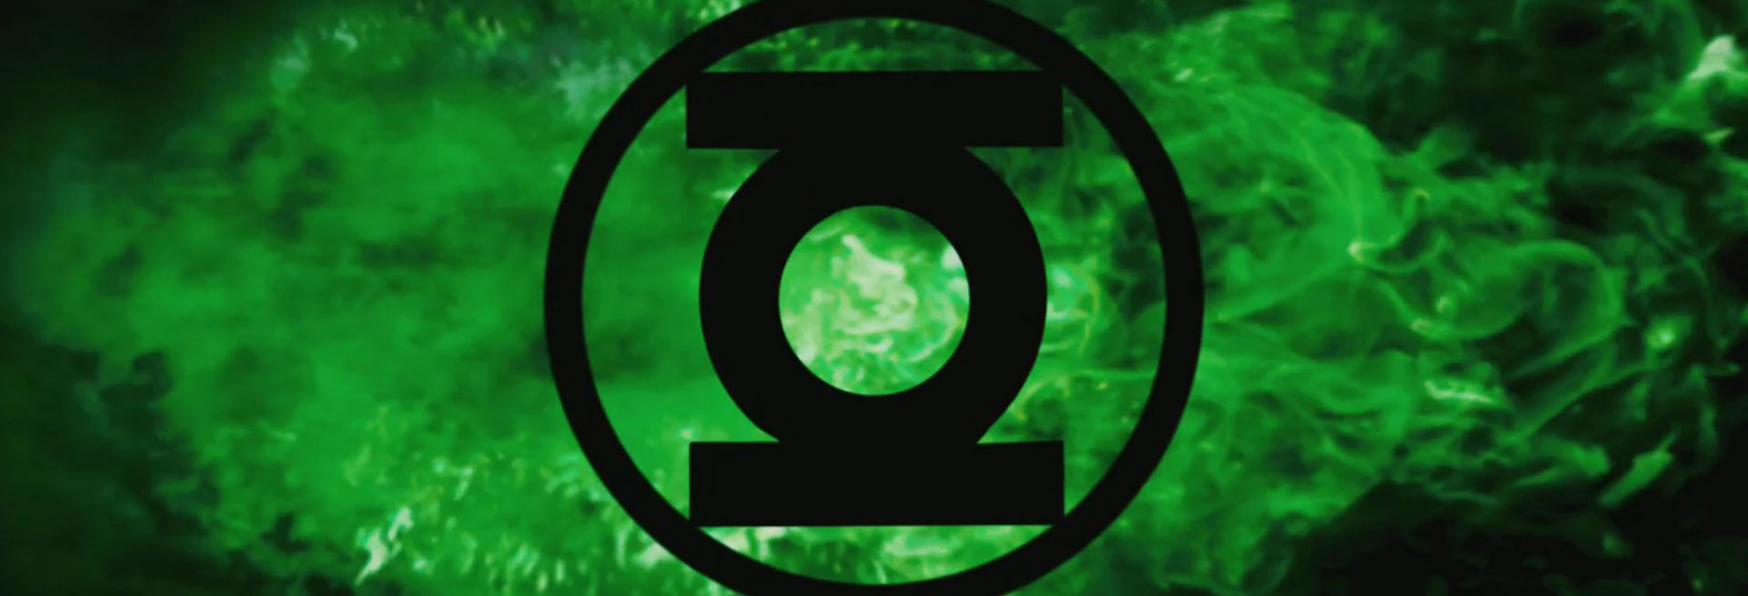 Green Lantern: HBO Max svela i Primi Dettagli sulla nuova Serie TV